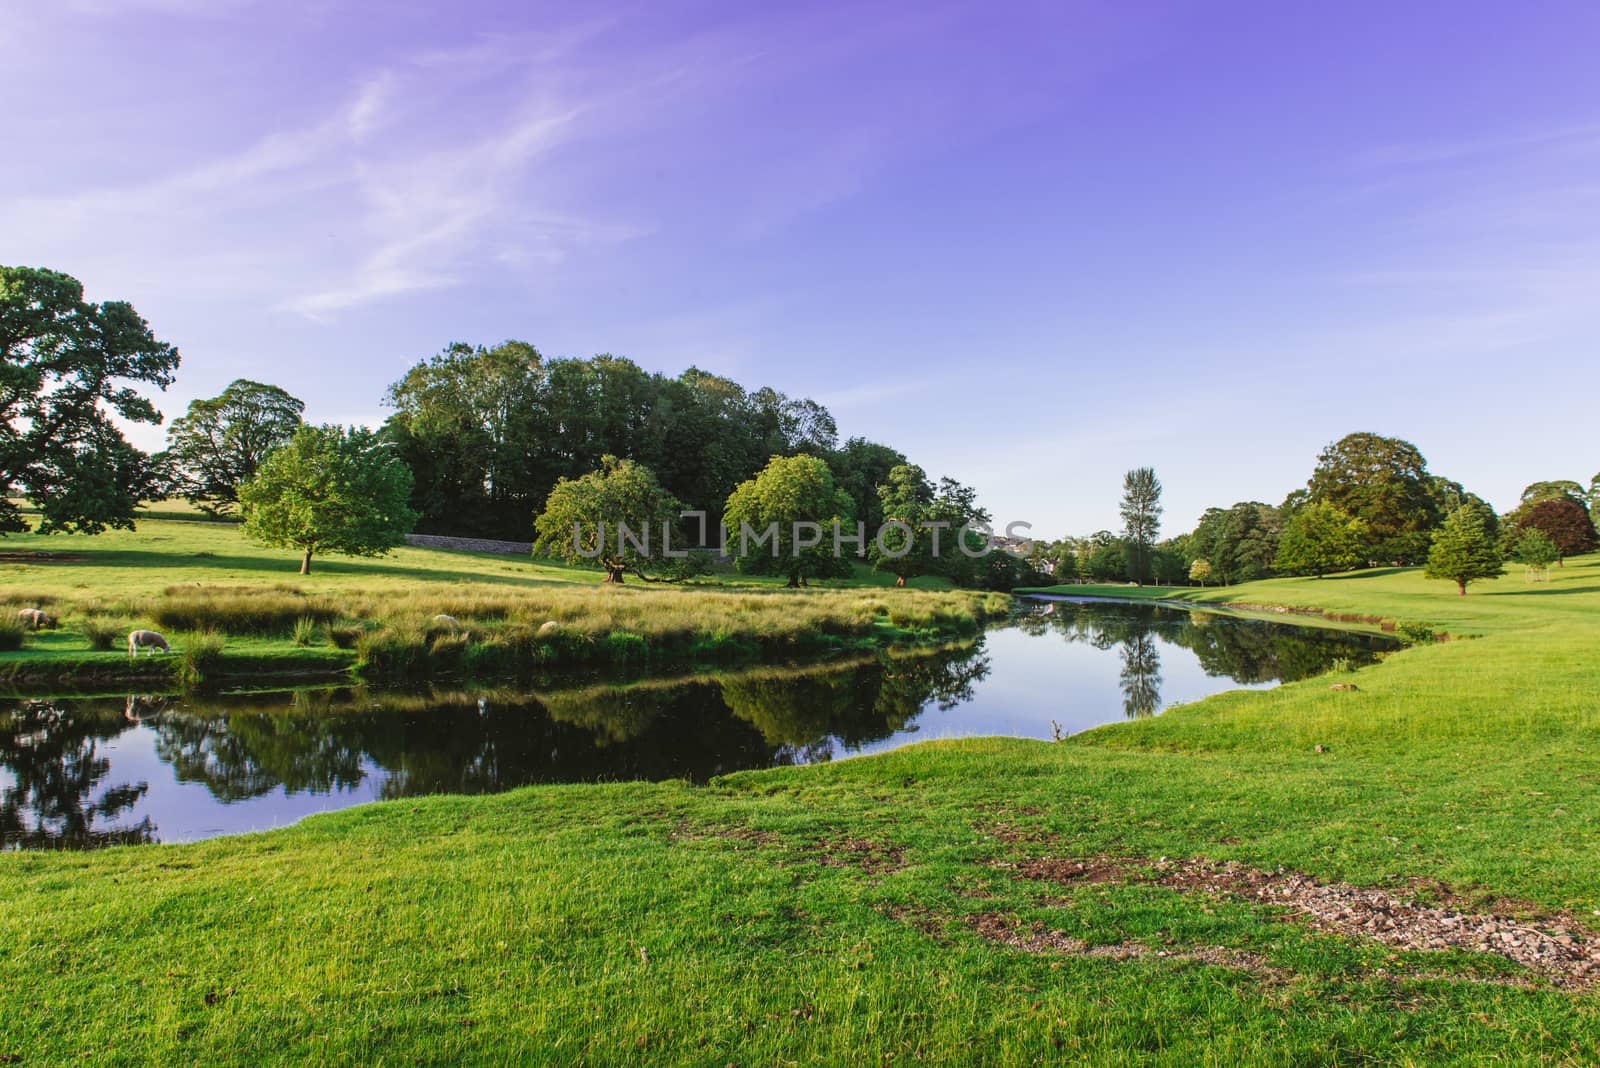 a bend in the River Bela at Dallam Park, Milnthorpe, Cumbria, UK